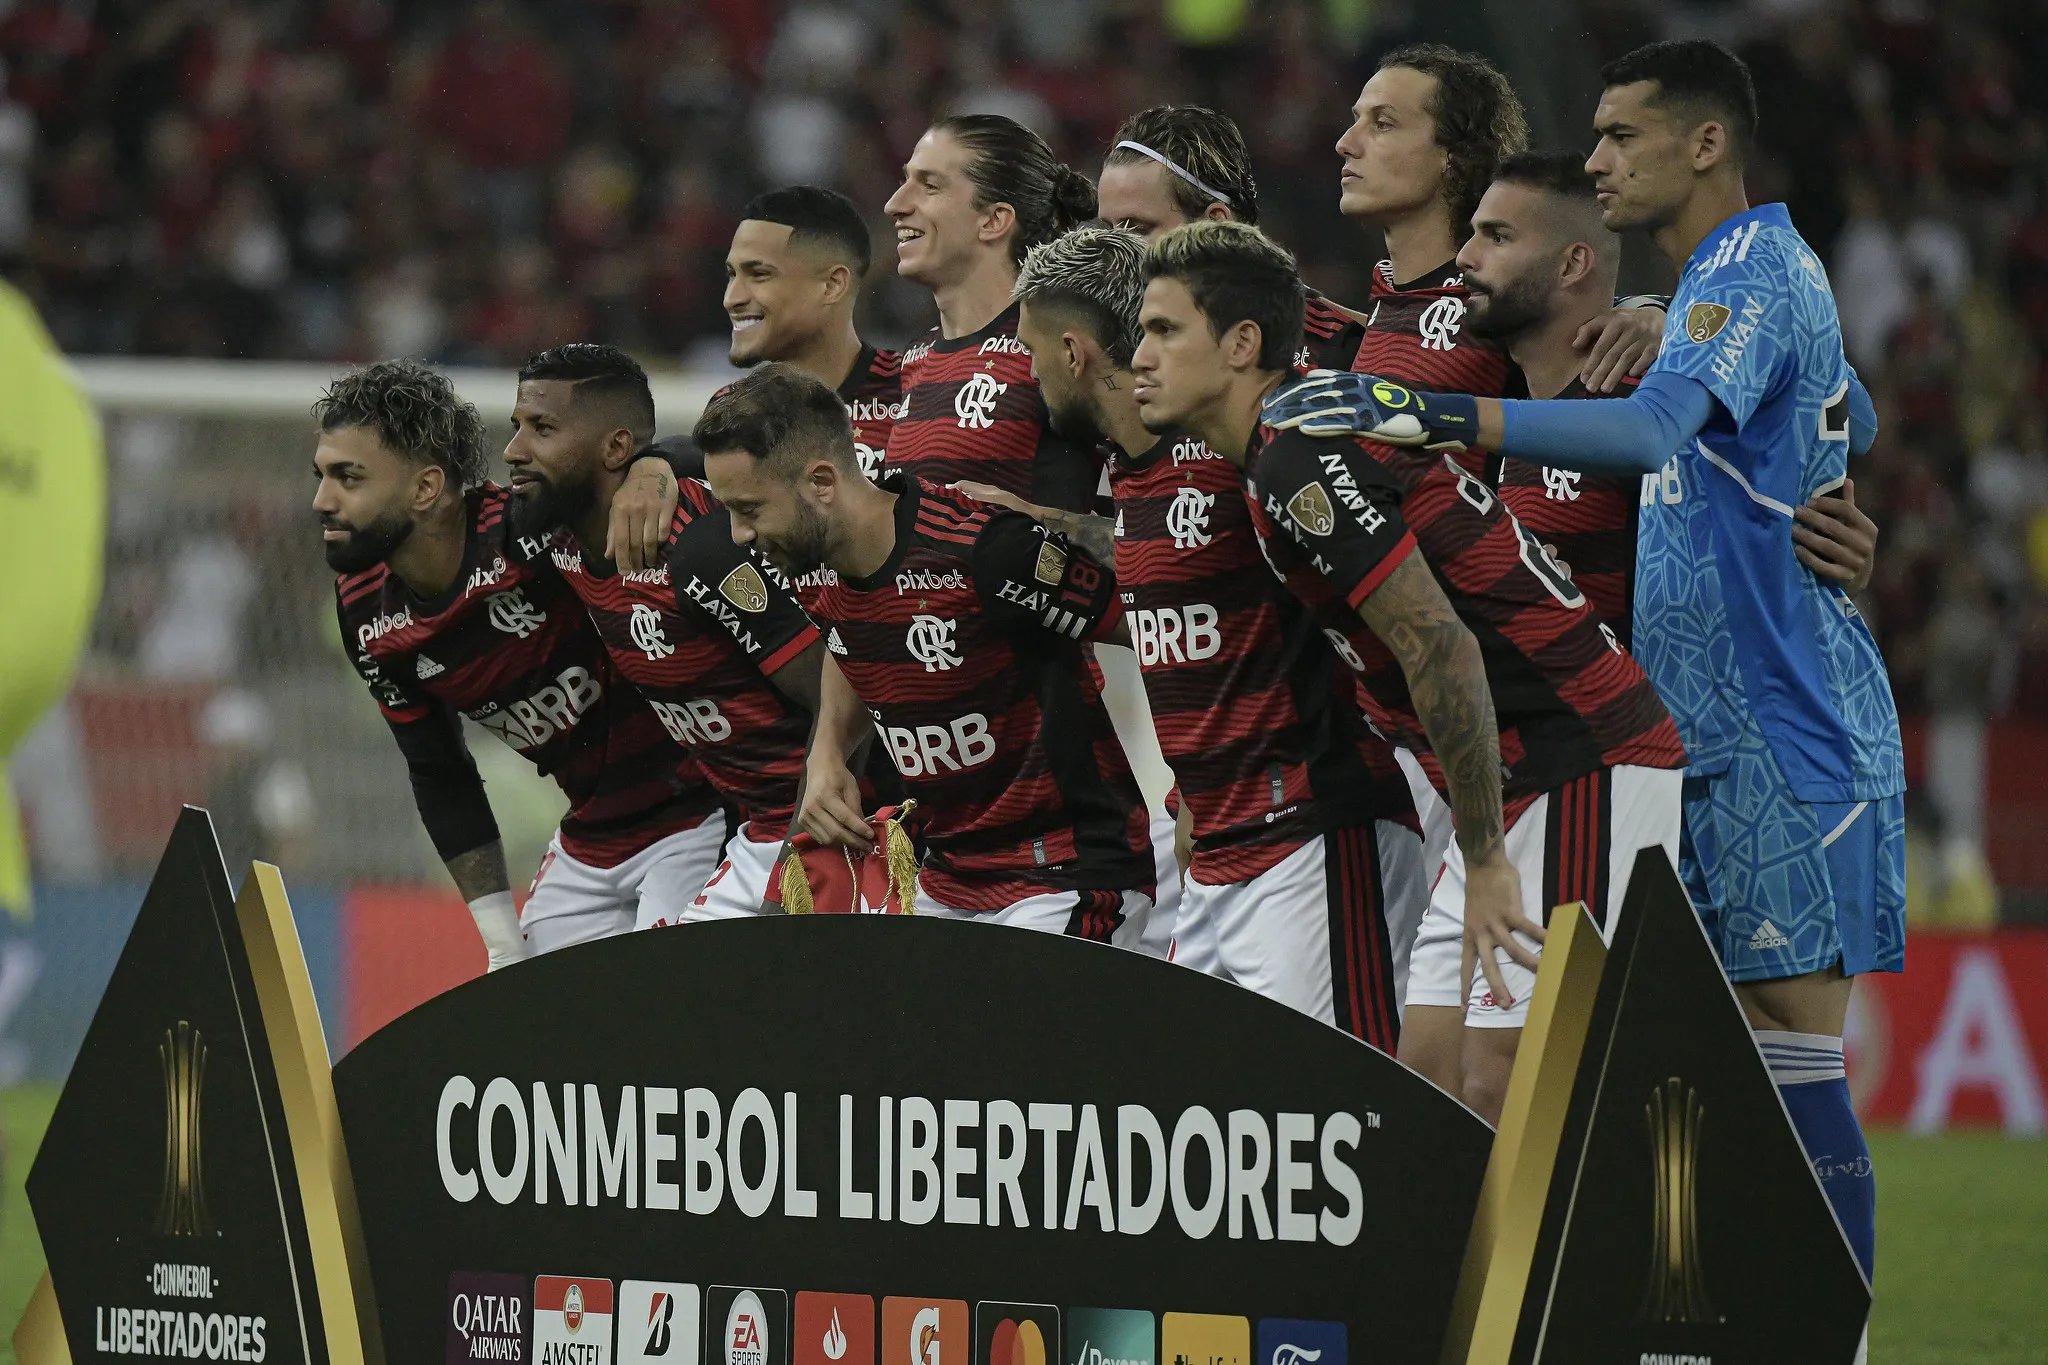 Salário dos jogadores do Flamengo: veja quais são os 7 maiores